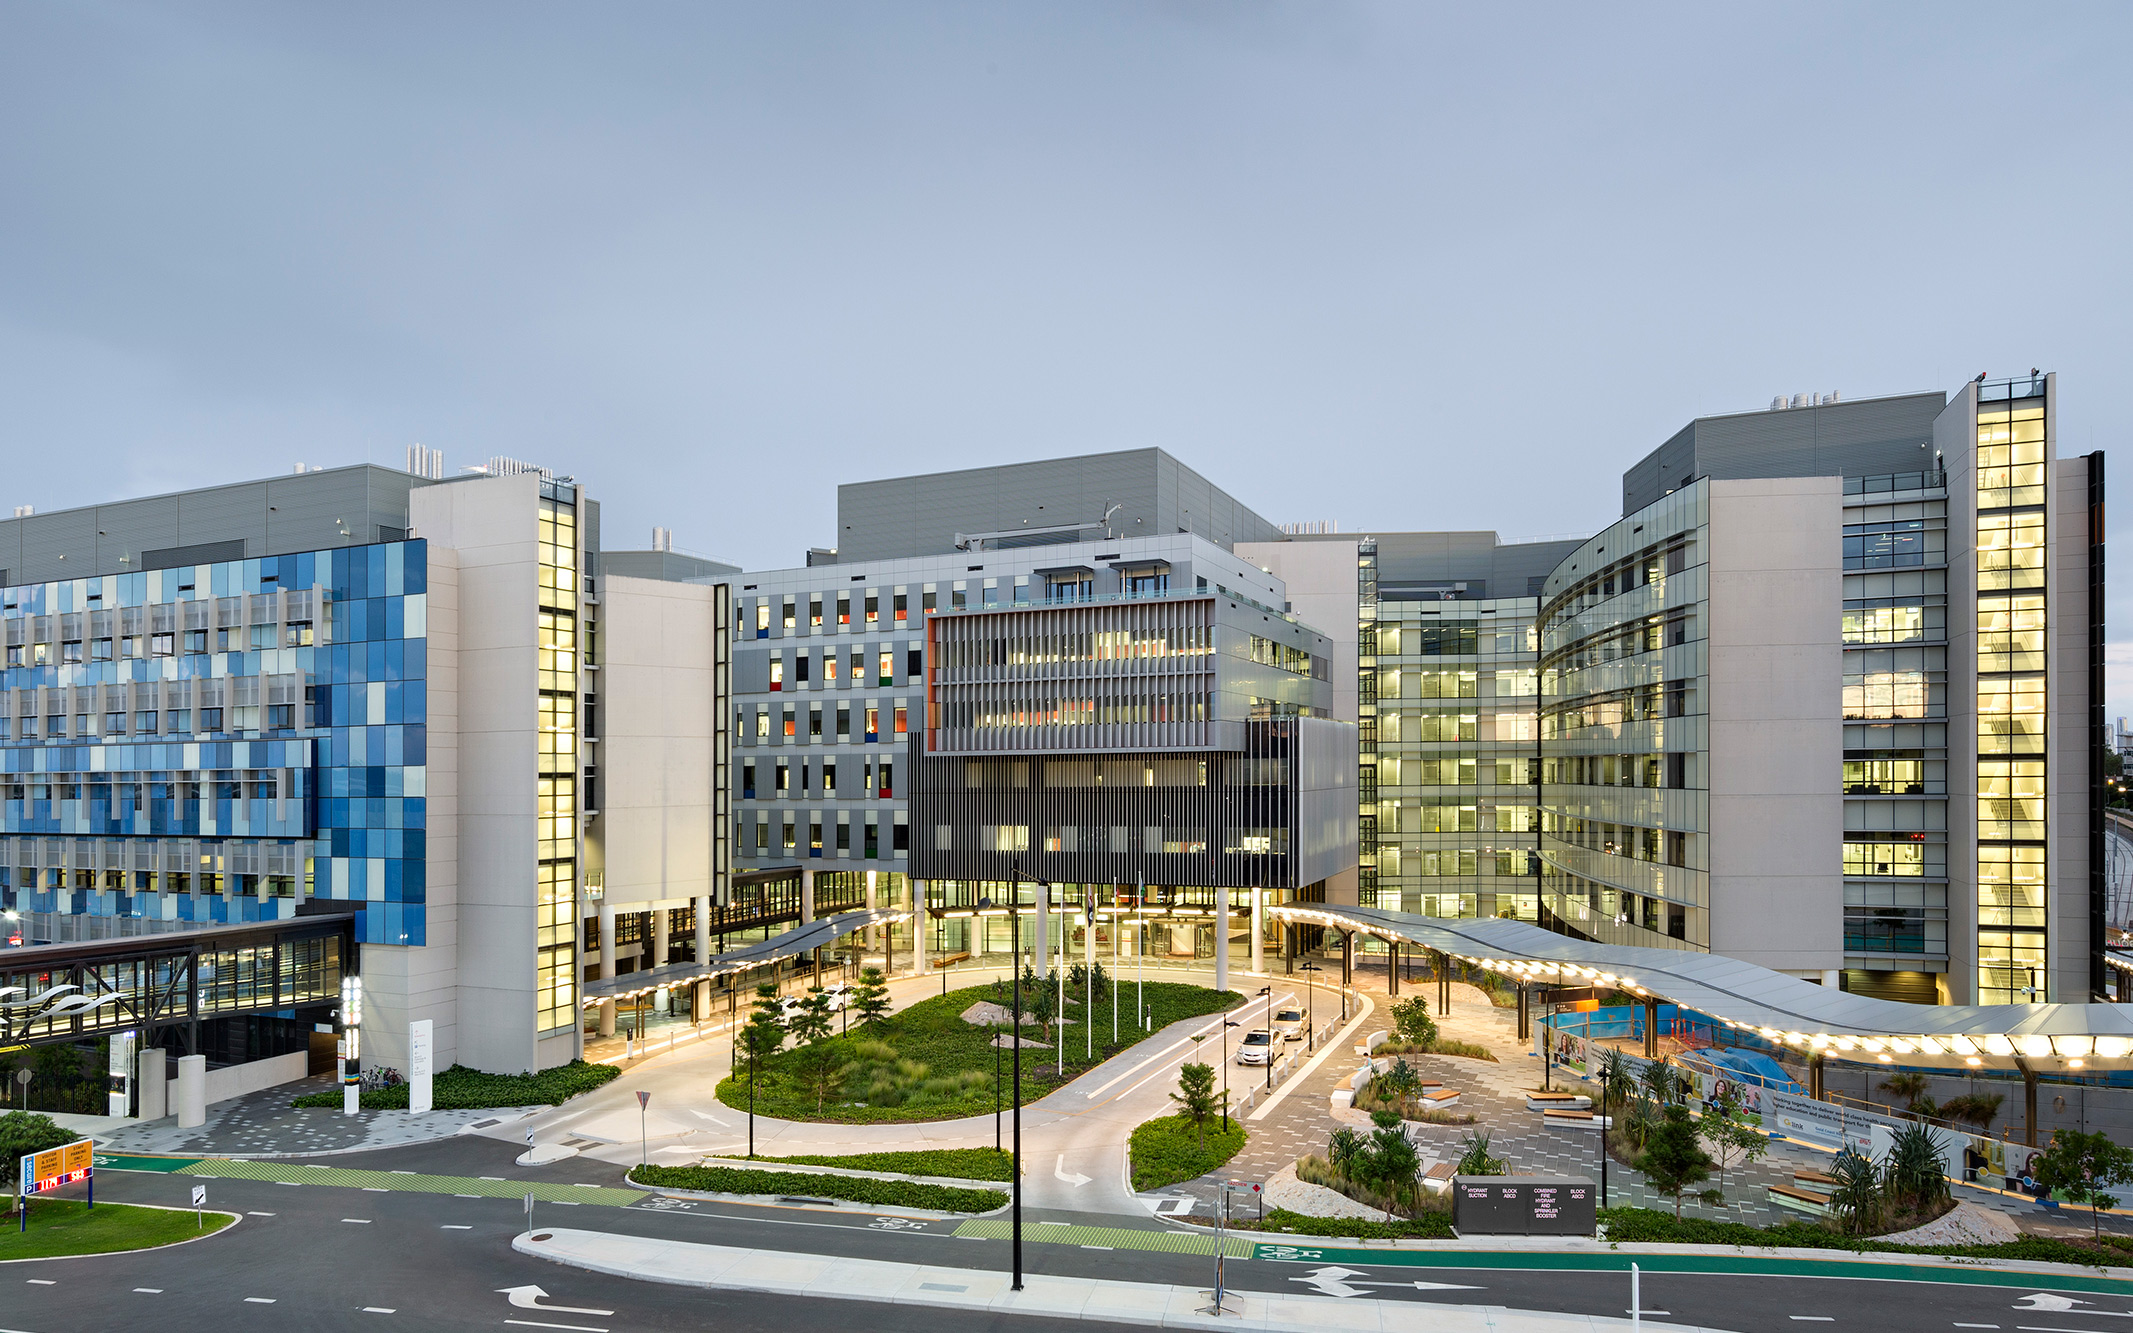 Gold coast university hospital